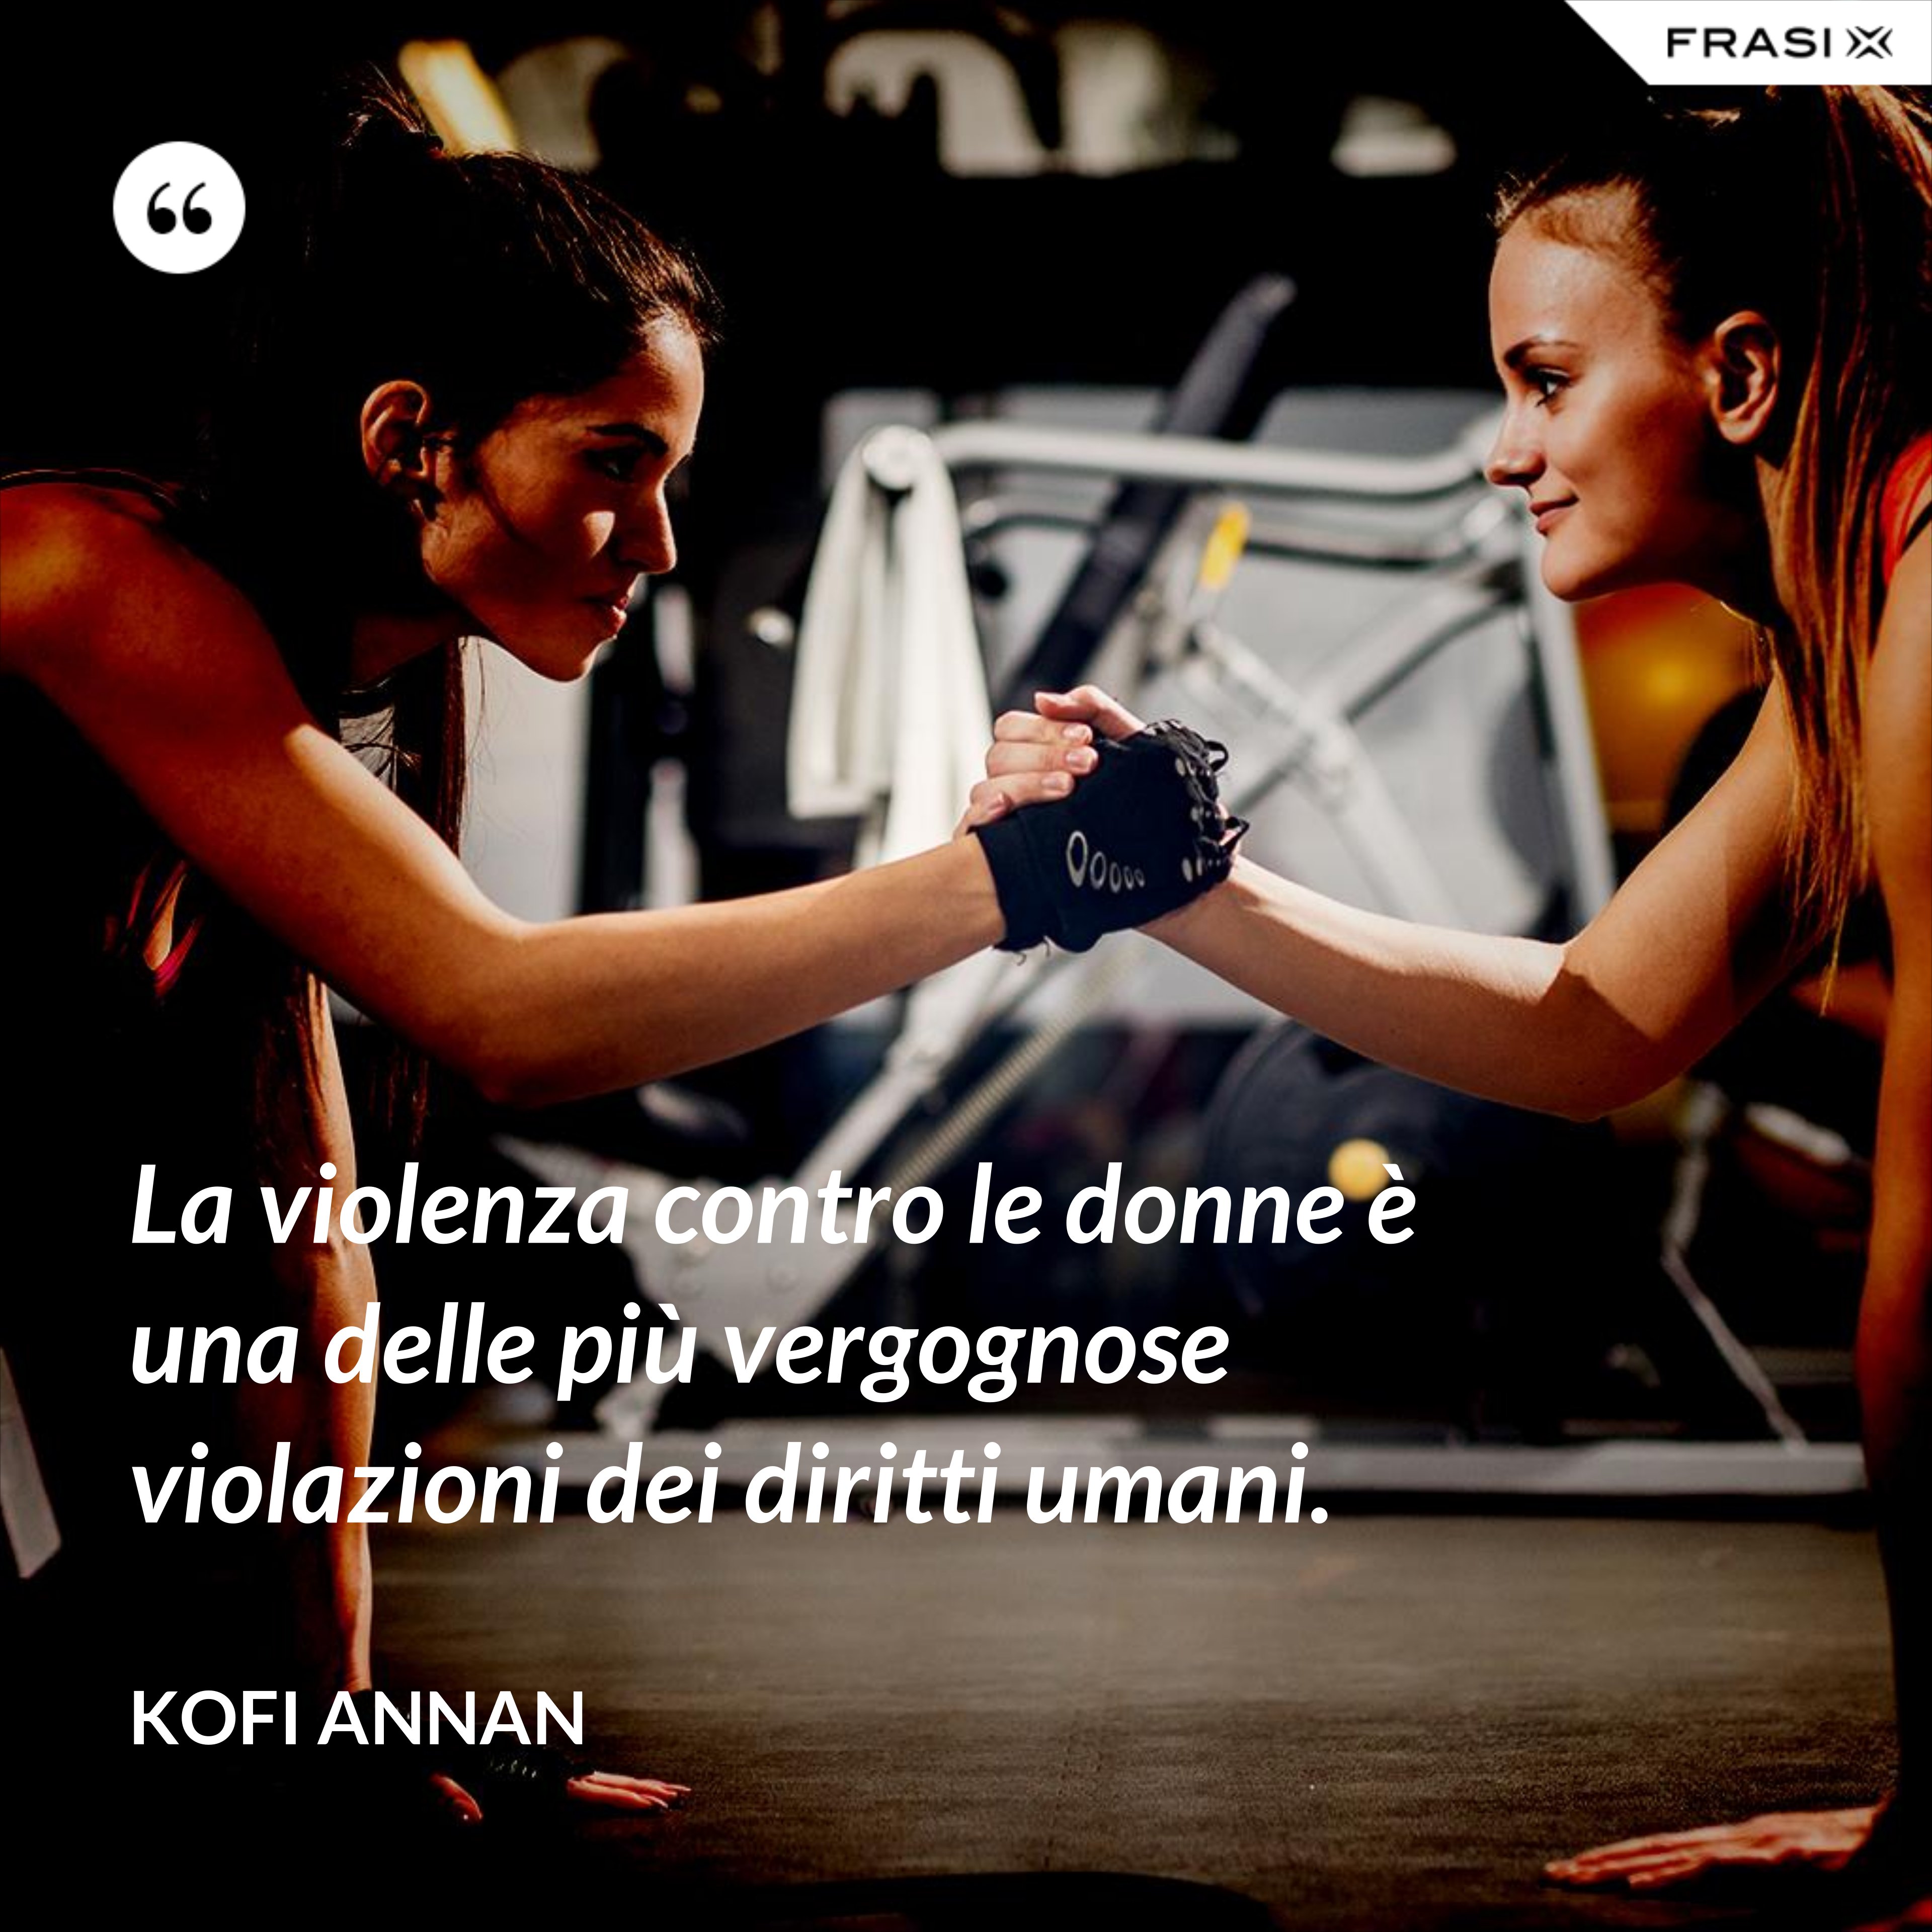 La violenza contro le donne è una delle più vergognose violazioni dei diritti umani. - Kofi Annan